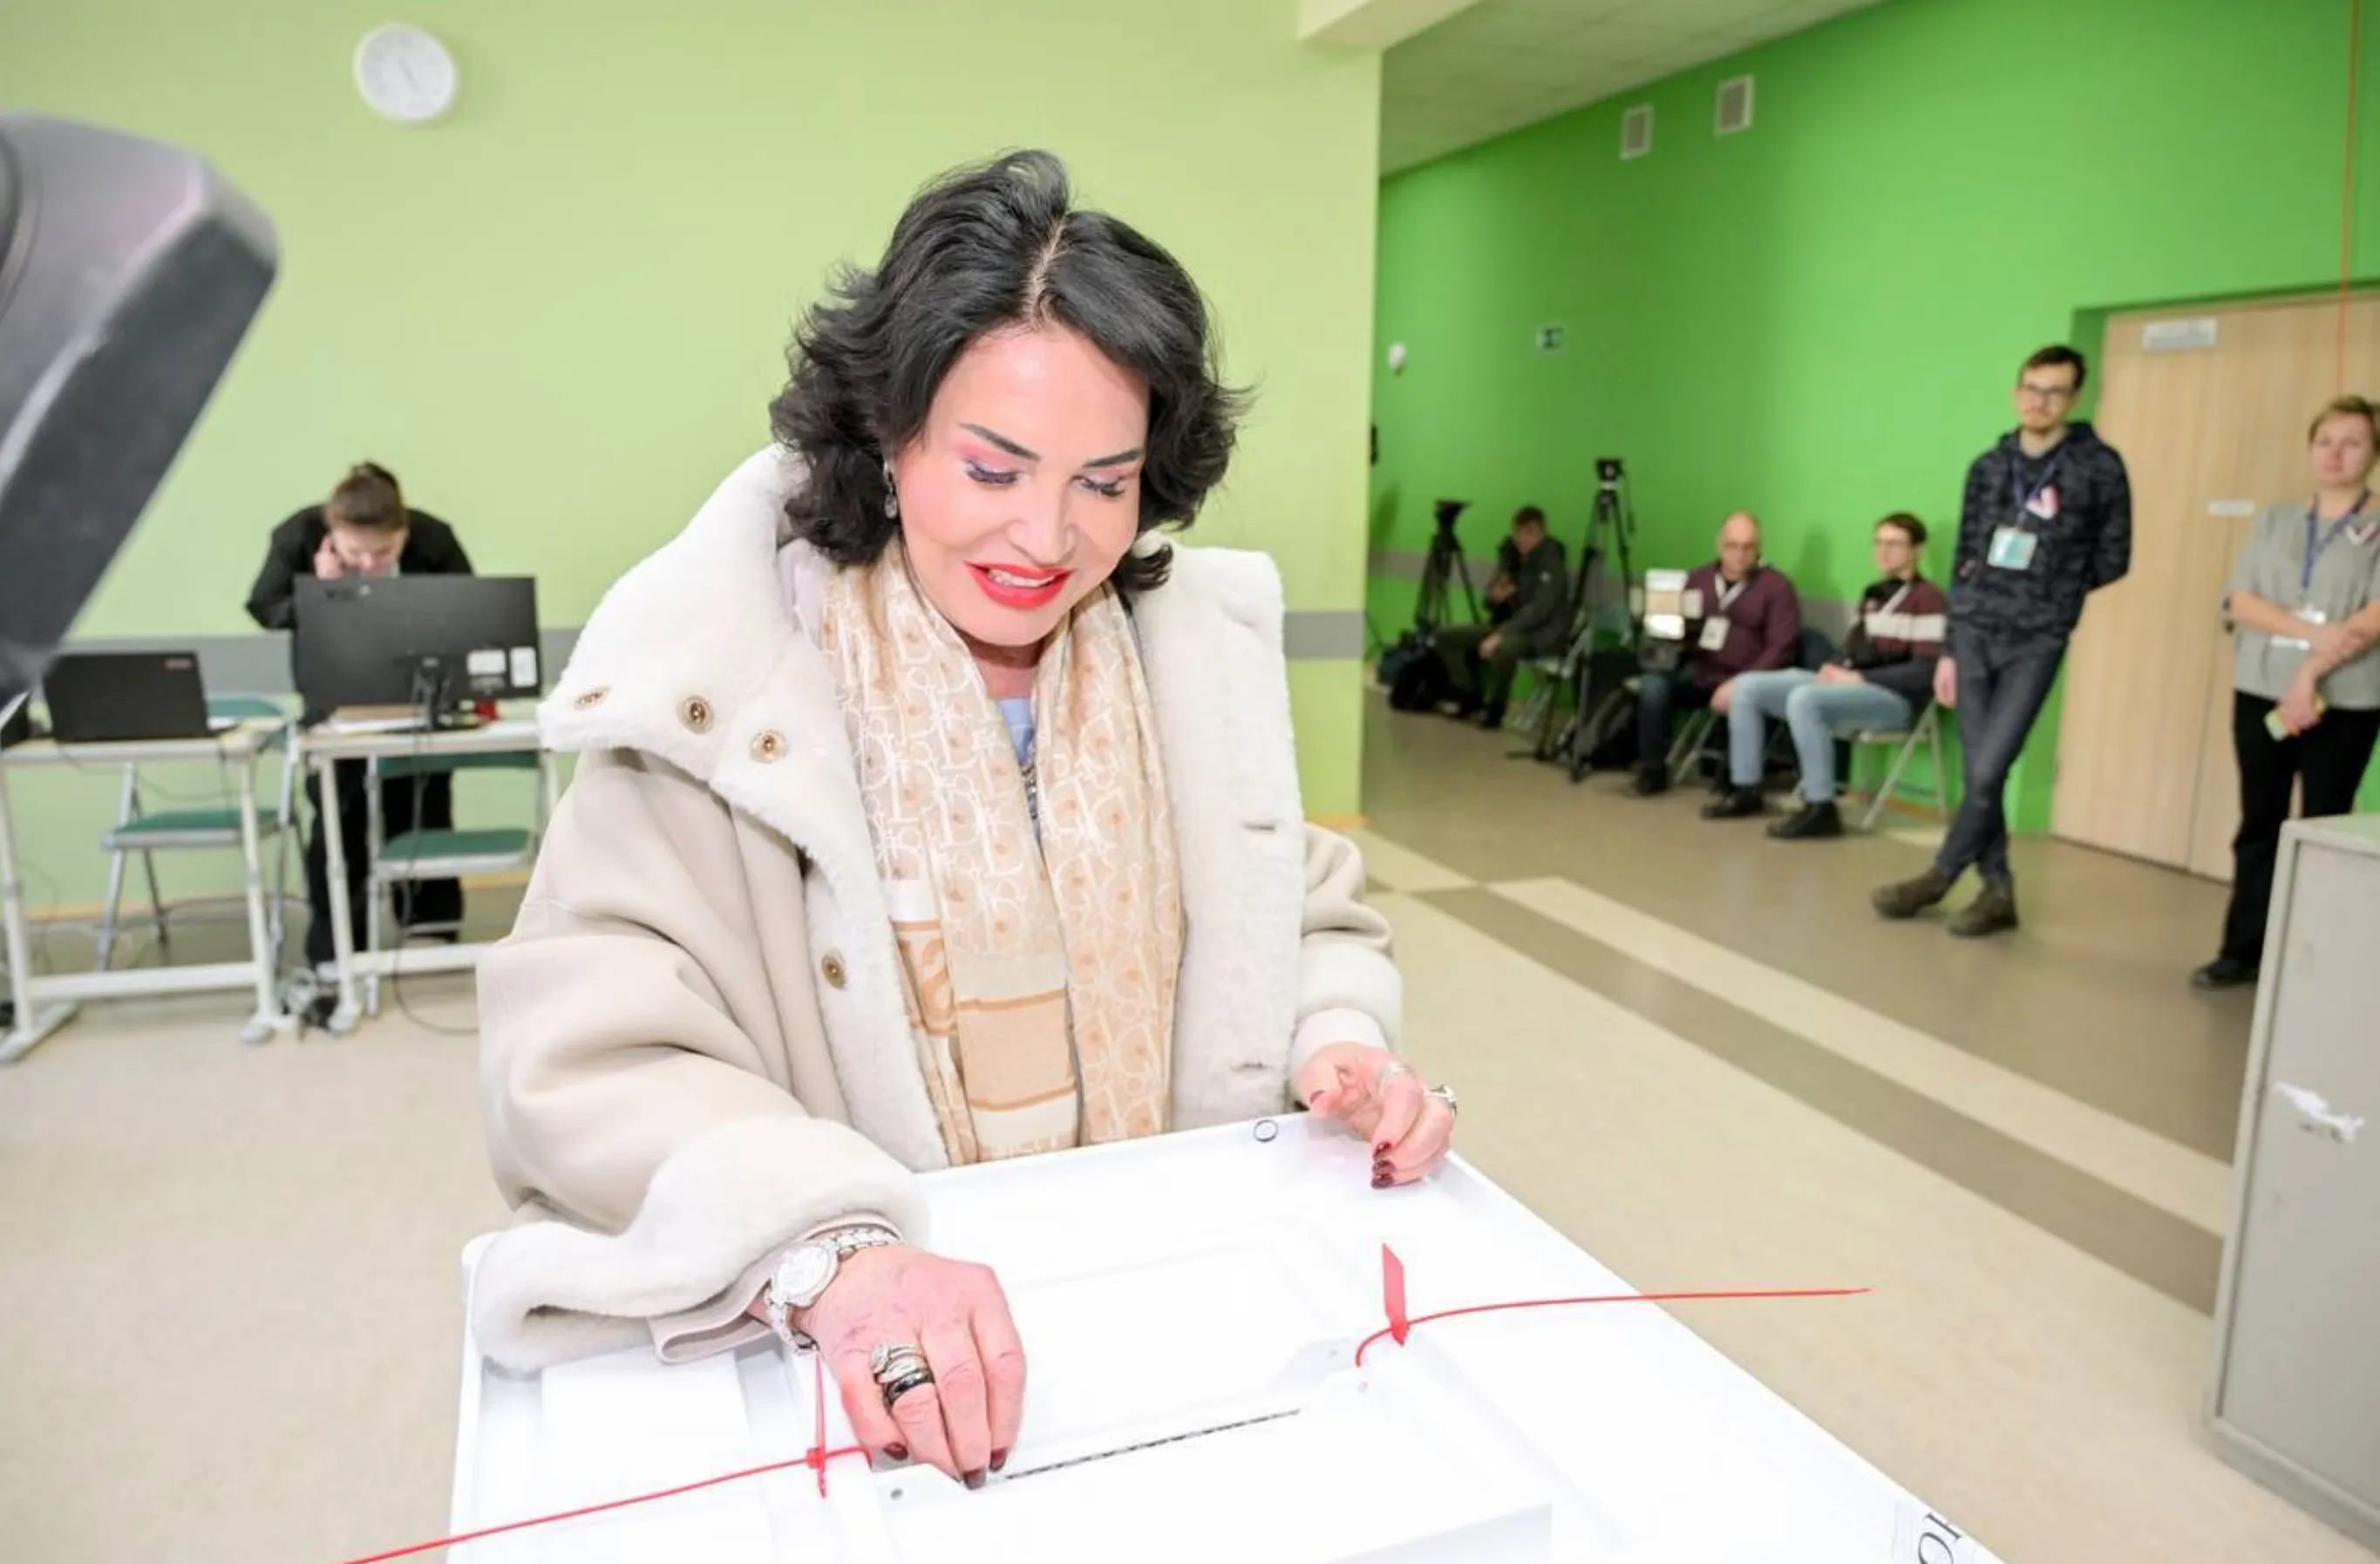 Надежда Бабкина поделилась своим девизом по жизни, проголосовав на участке в Москве